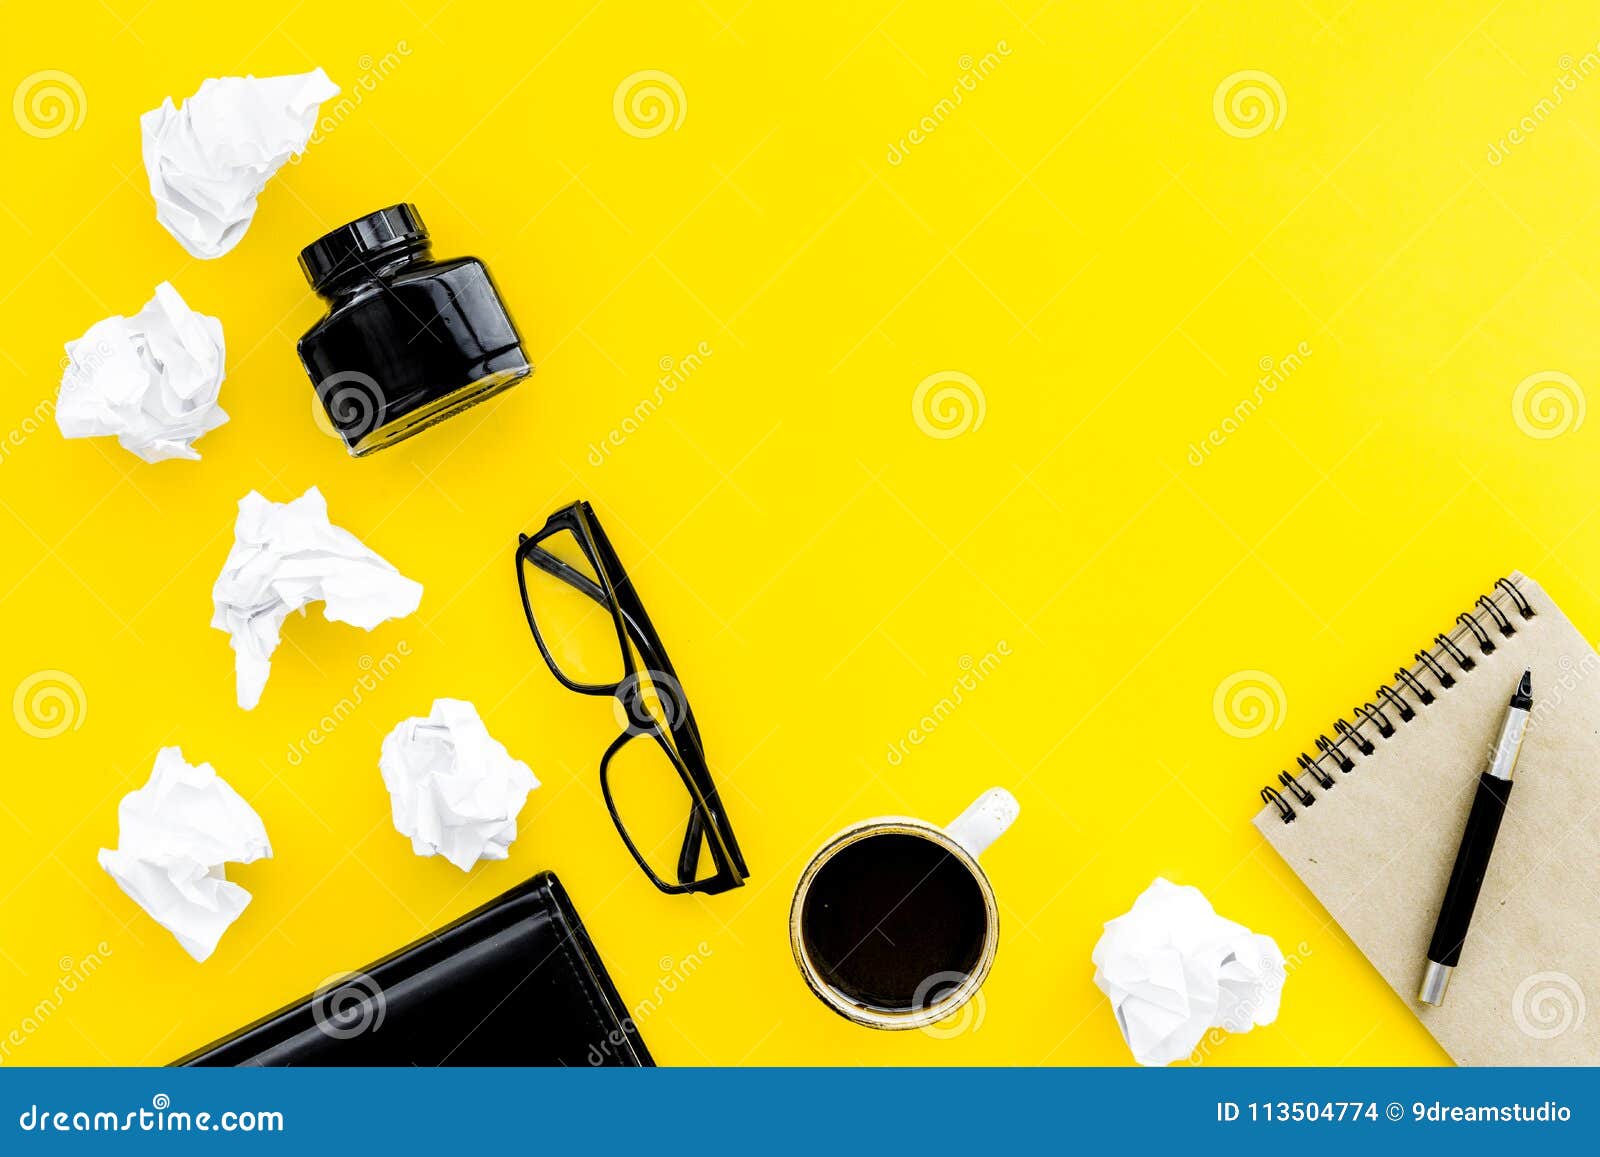 Màn hình nền người viết Retro và Hiện đại với cốc cà phê, sổ tay và mực trên nền đồng màu vàng sẽ mang đến cho bạn một không gian làm việc đầy sáng tạo và thú vị. Cảm nhận sự mới lạ, đậm nét và gợi cảm trong từng chi tiết của màn hình nền này.